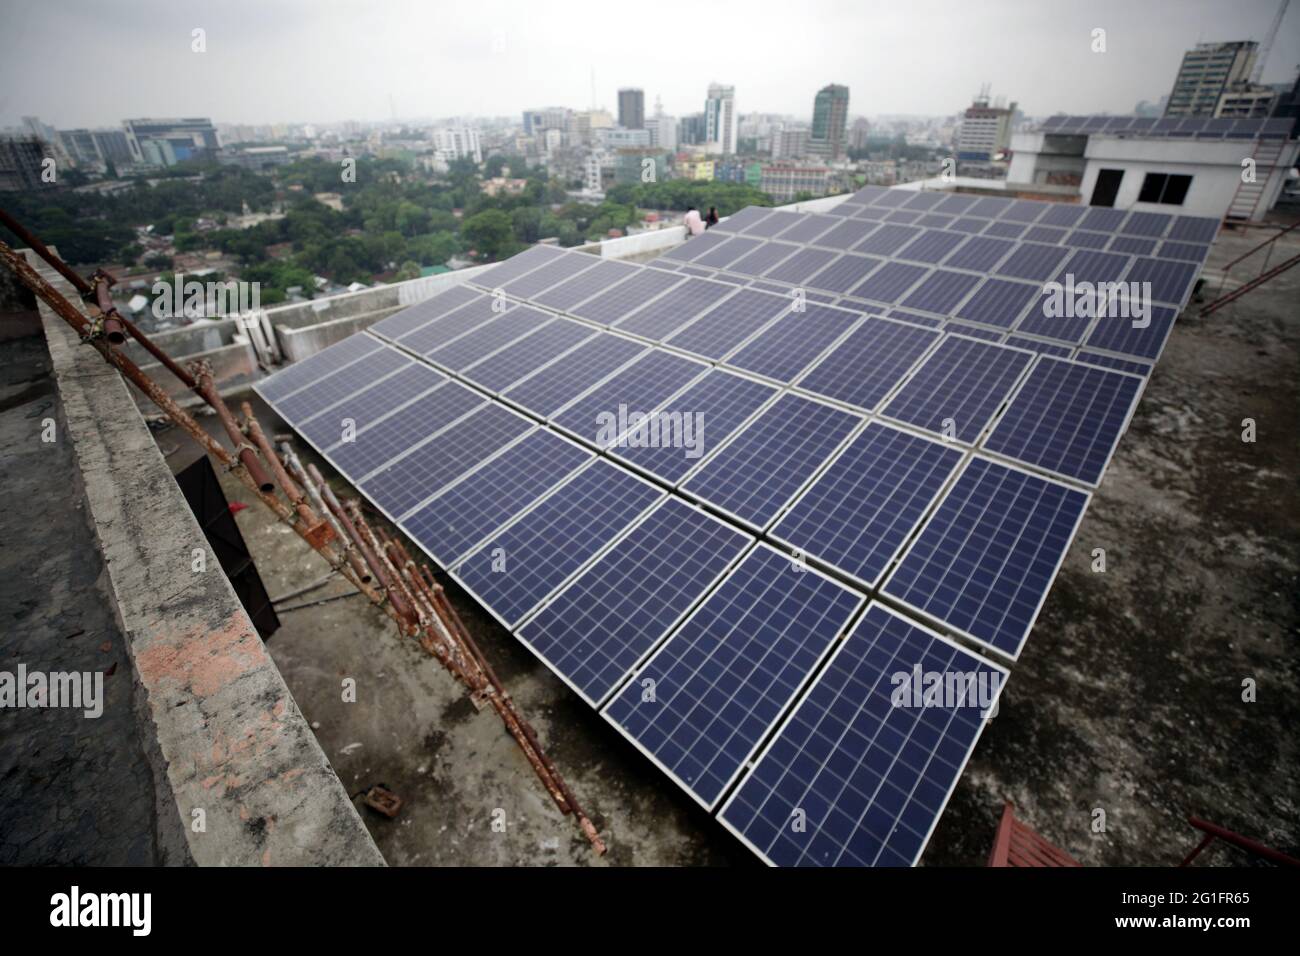 Jun 07 2021.Dhaka, bangladesch,Solarenergie trägt mehr neuen Strom ins Netz als jede andere Form von Energie – eine Leistung, die mehr von der eu angetrieben wird Stockfoto